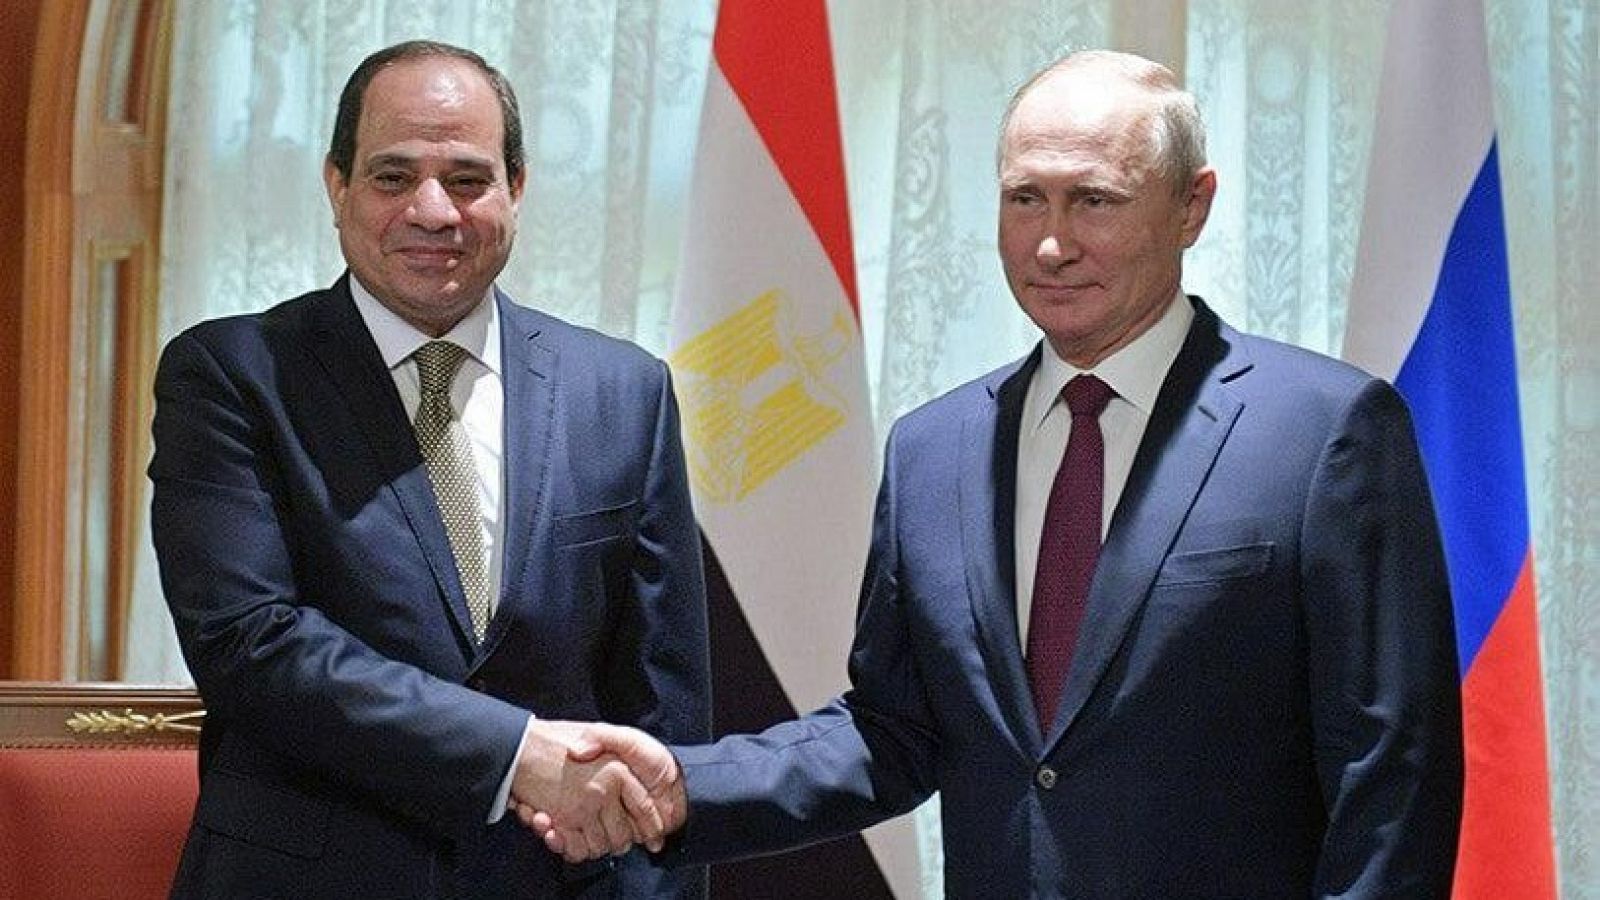 El presidente de Rusia, Vladimir Putin, y el presidente de Egipto, Abdel Fattah al-Sisi, se dan la mano durante su reunión en el complejo turístico del Mar Negro de Sochi